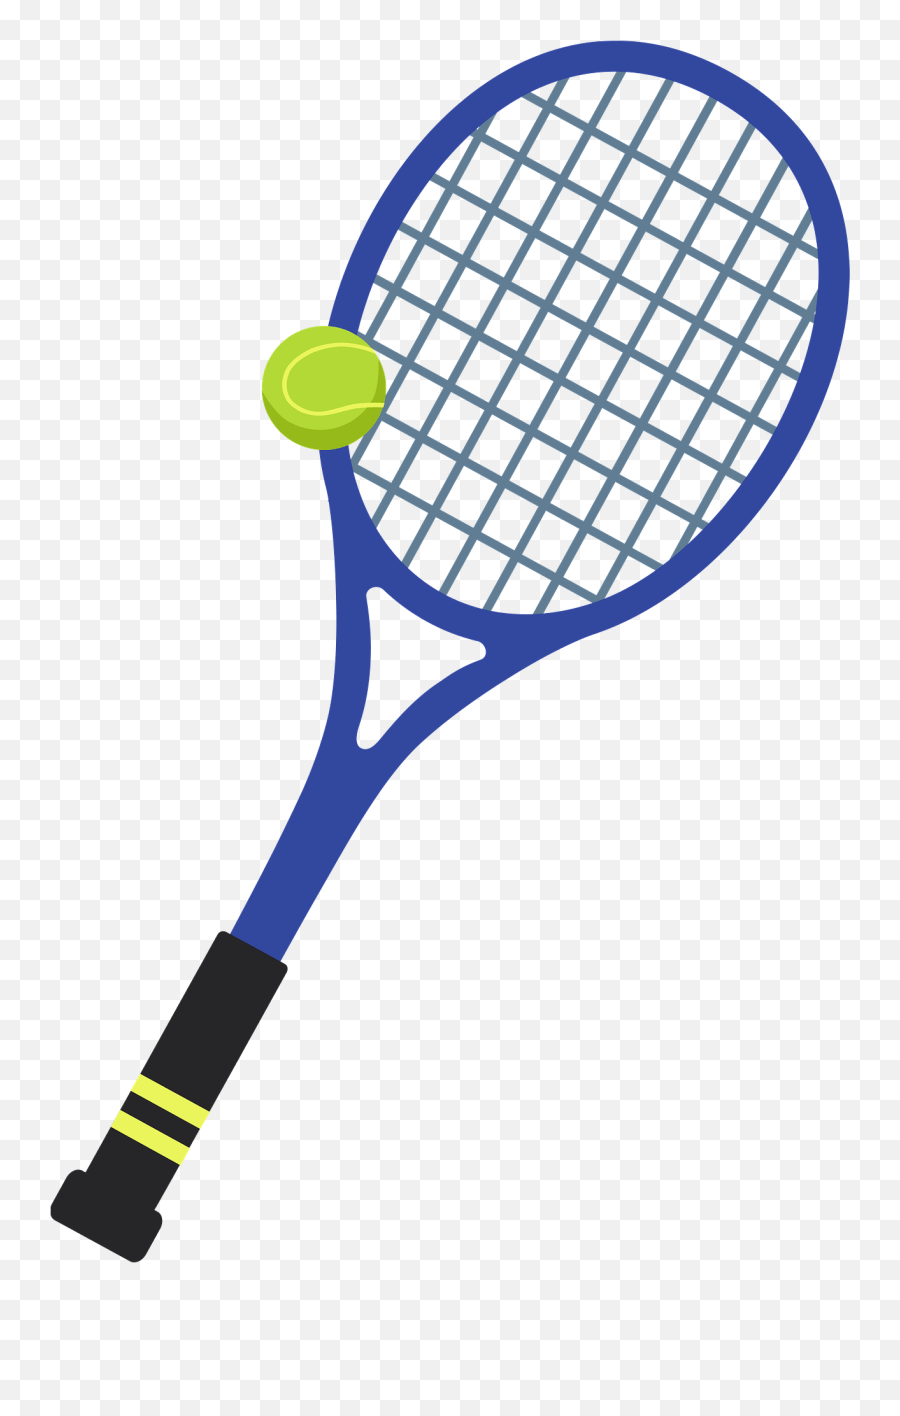 Tennis Racket Clipart - Juegos Del Nintendo Switch Tenis Emoji,Tennis Racket Clipart